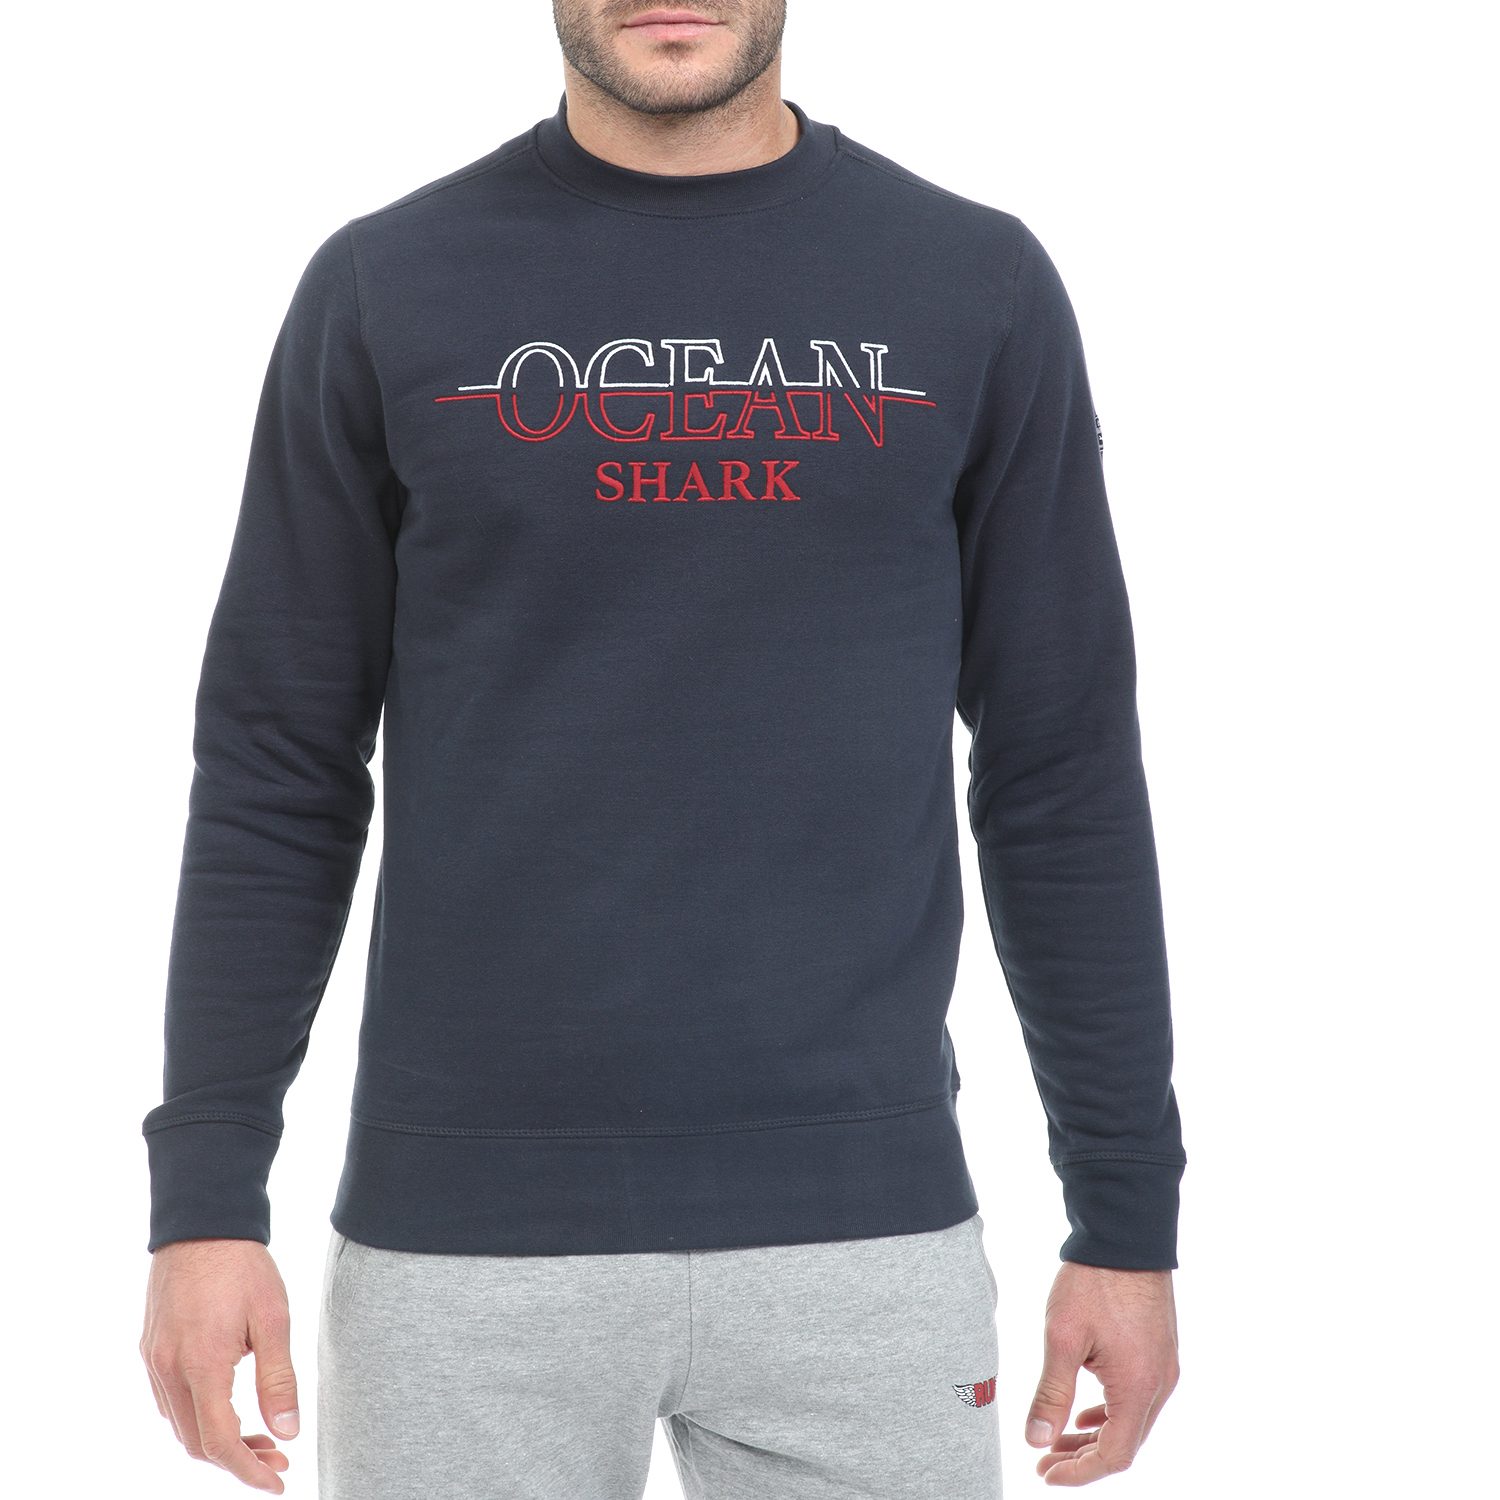 OCEAN SHARK Ανδρική φούτερ μπλούζα OCEAN SHARK μπλε